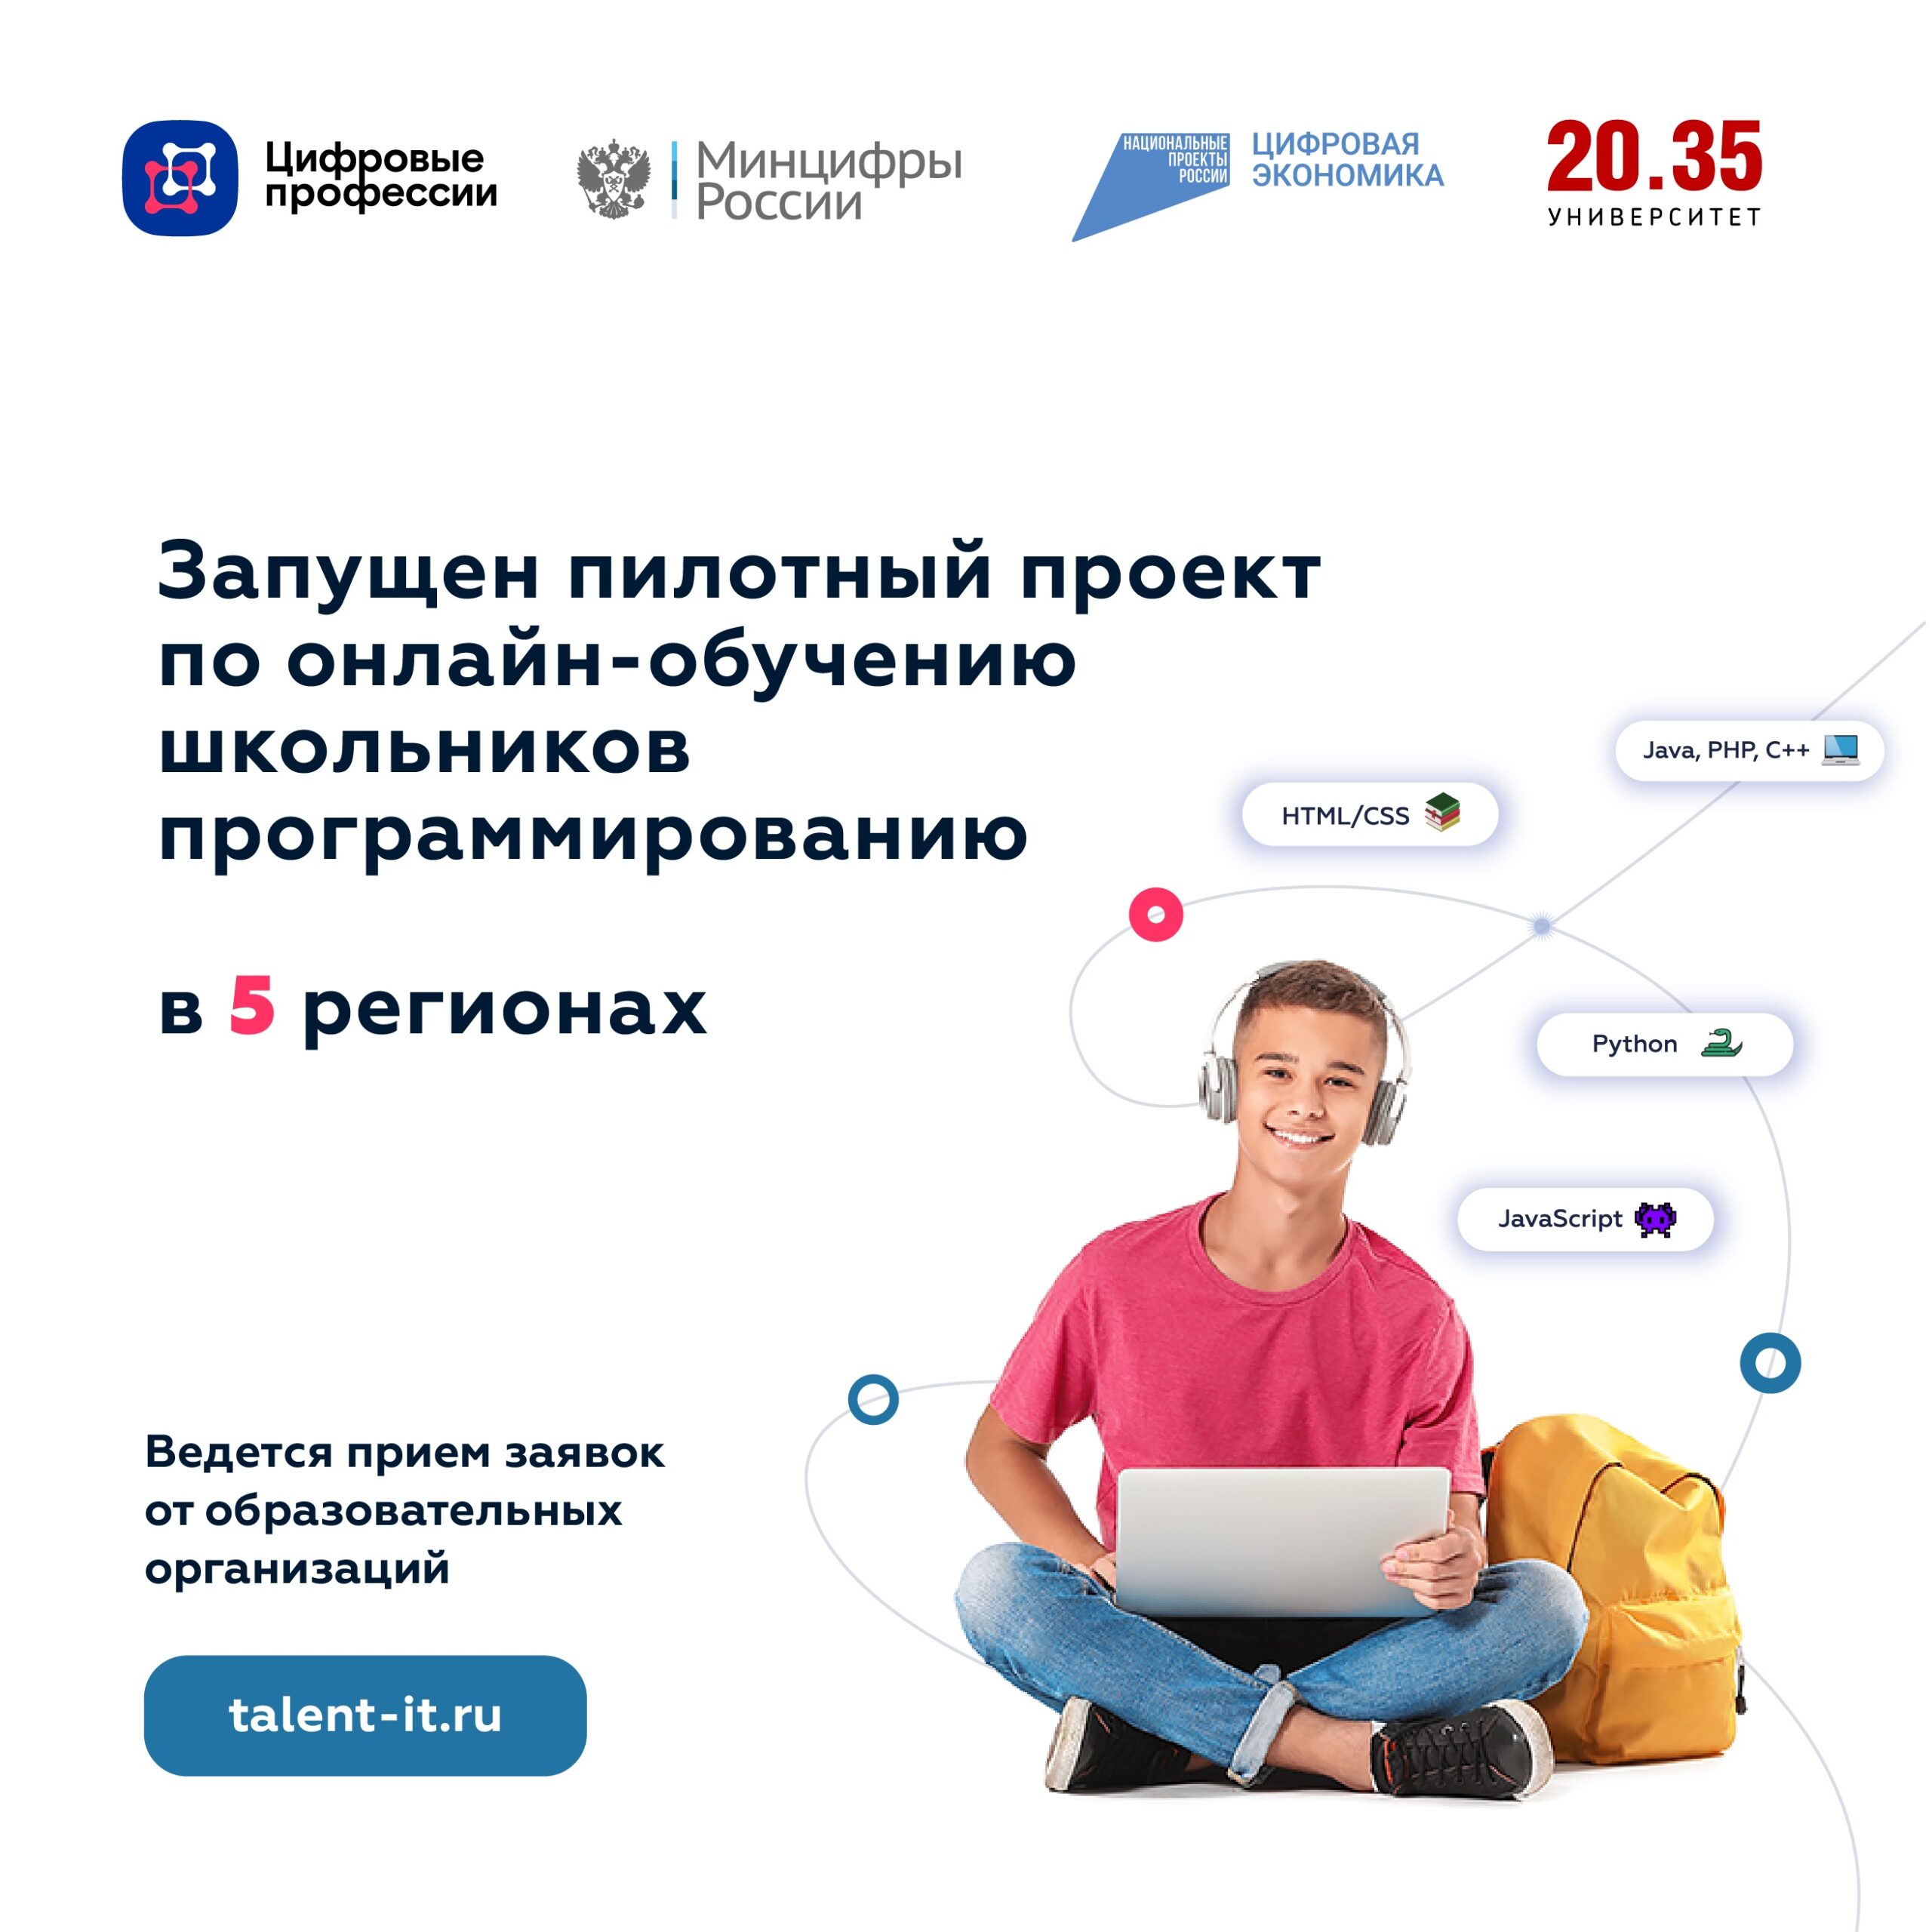 Якутские школьники смогут бесплатно изучать языки программирования по проекту Минцифры